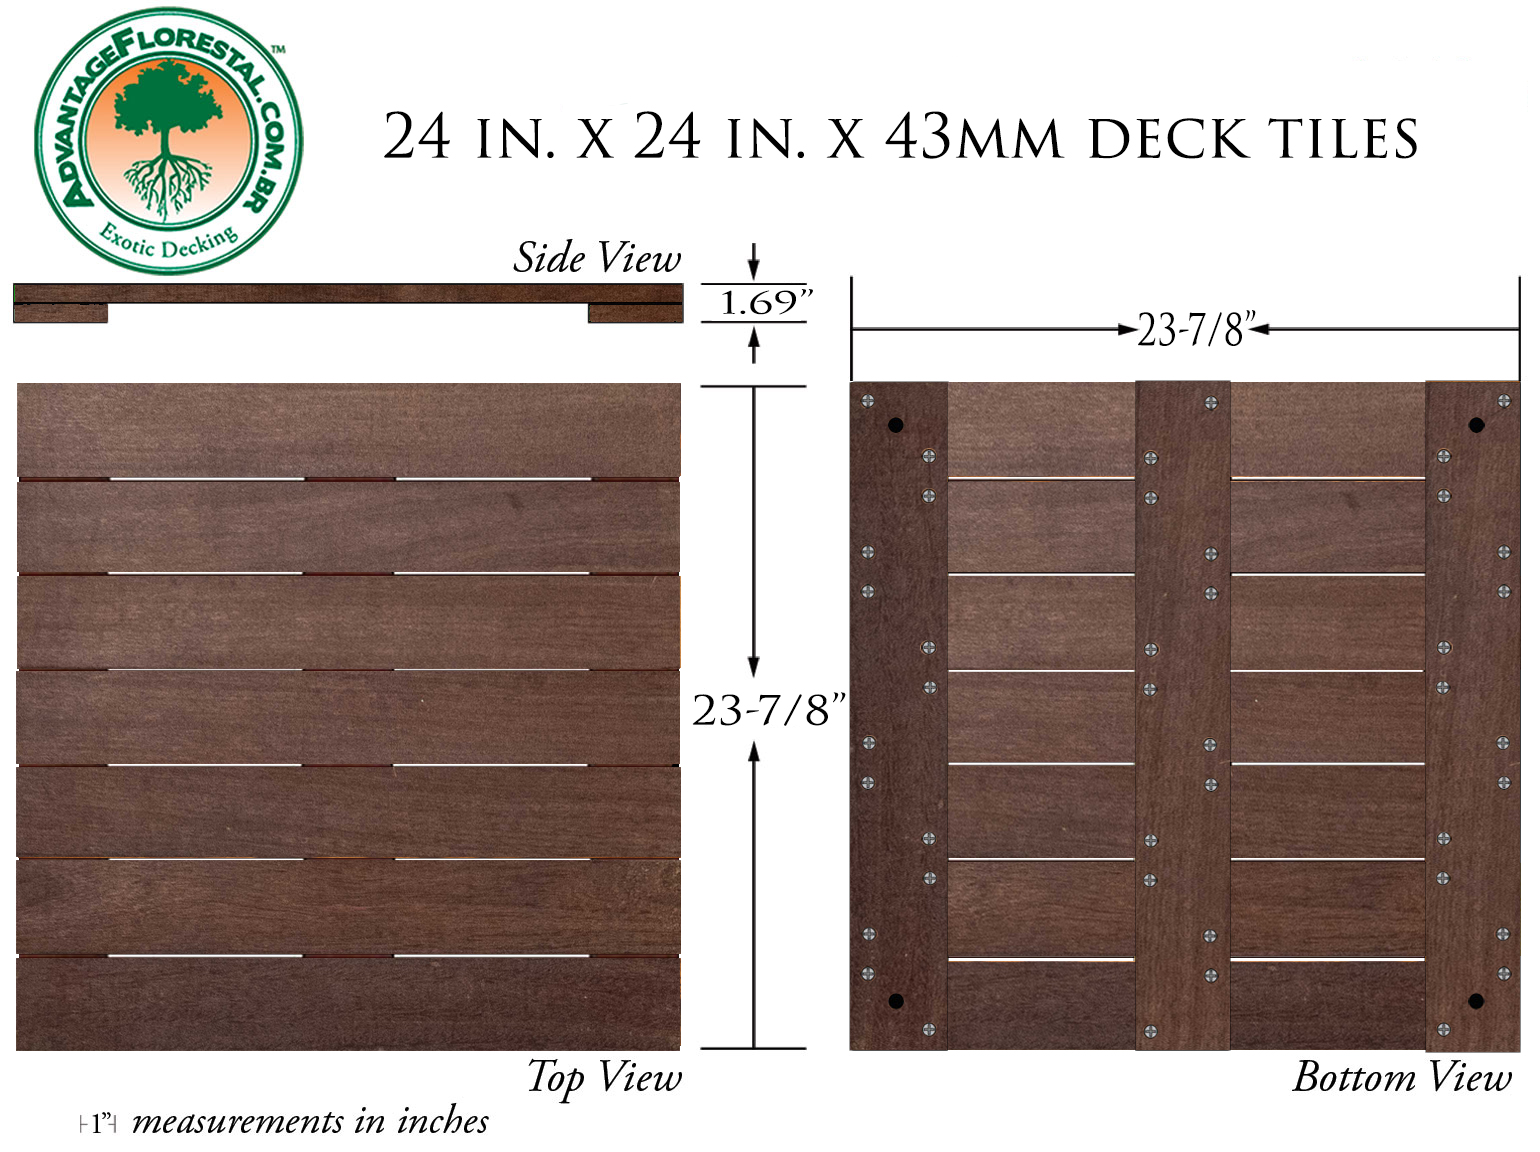 IPE Deck Tile 24 in. x 24 in. x 43mm